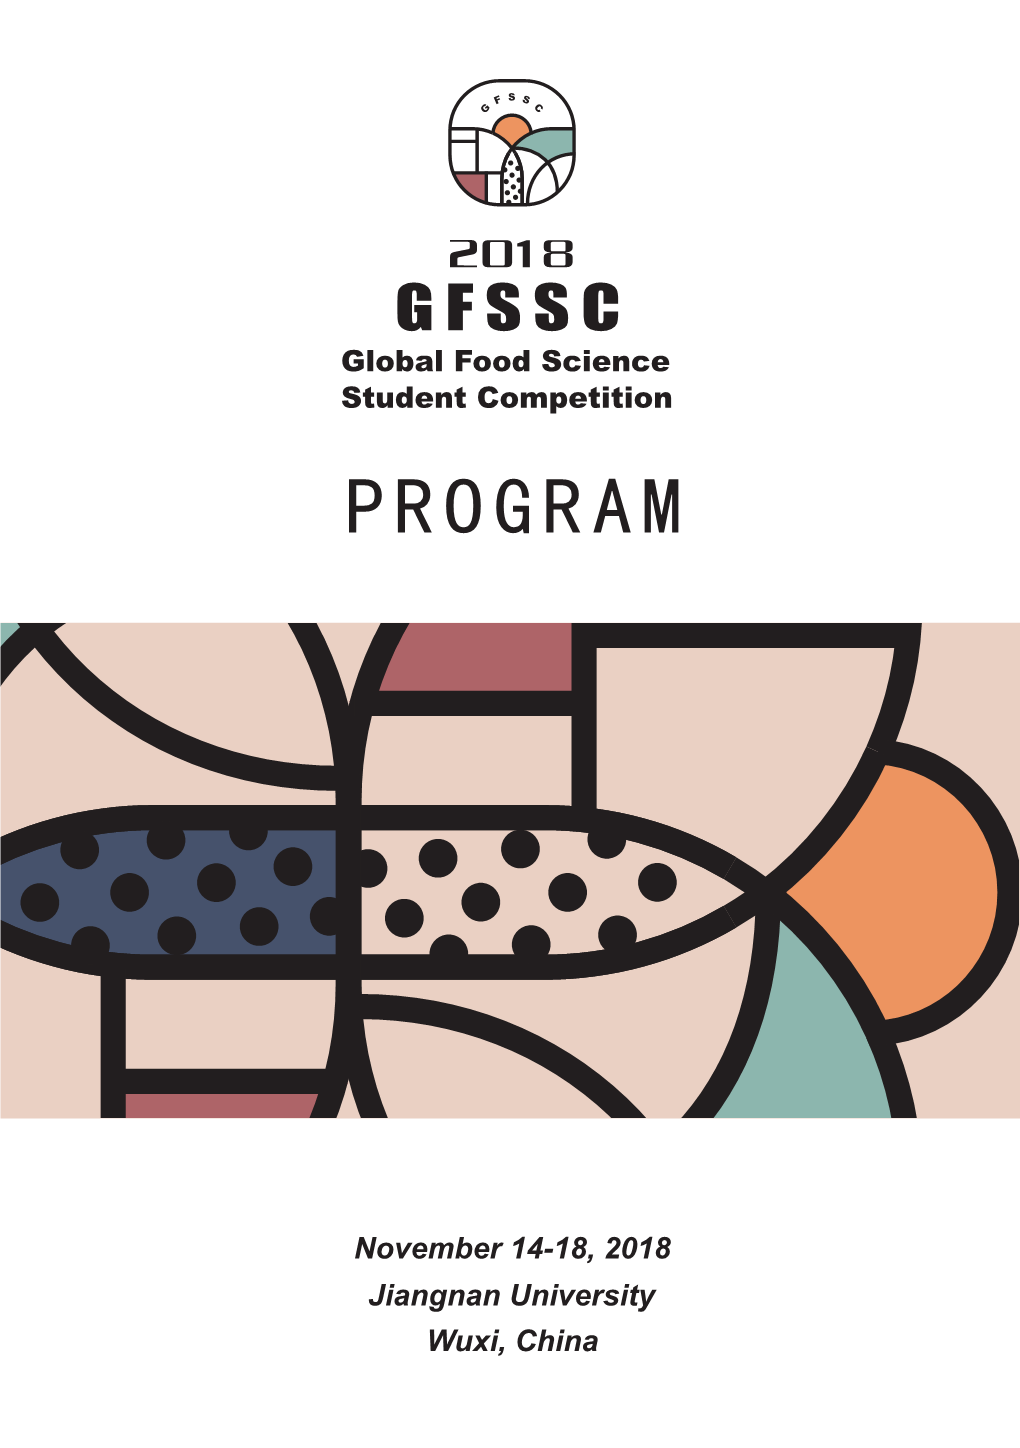 下载:2018GFSSC Program